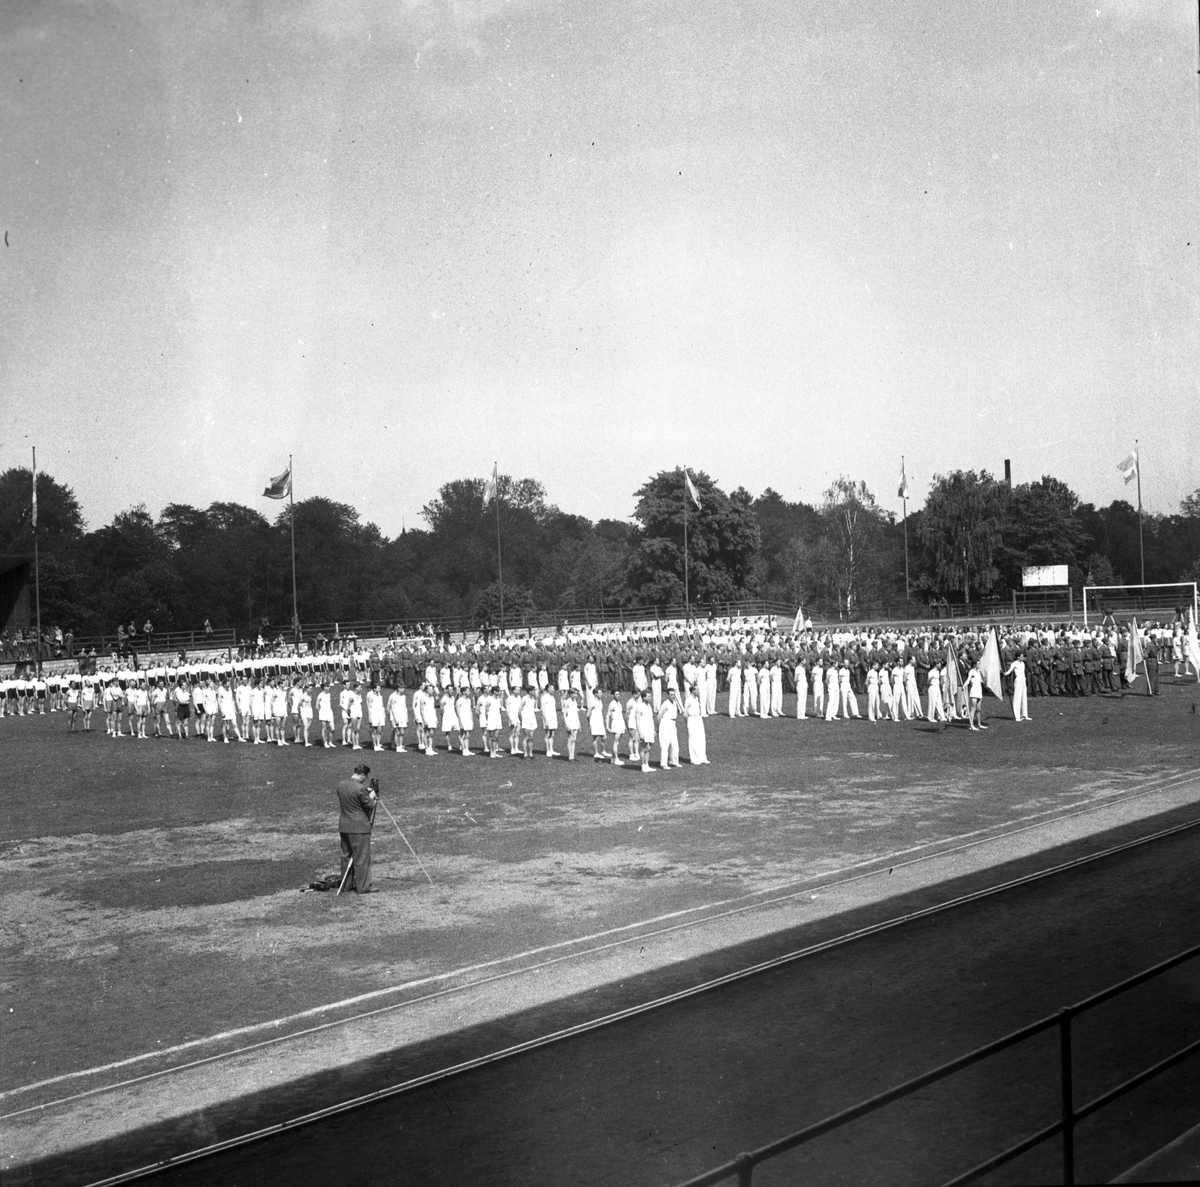 Gymnastik på Strömvallen.

3 juni 1943.